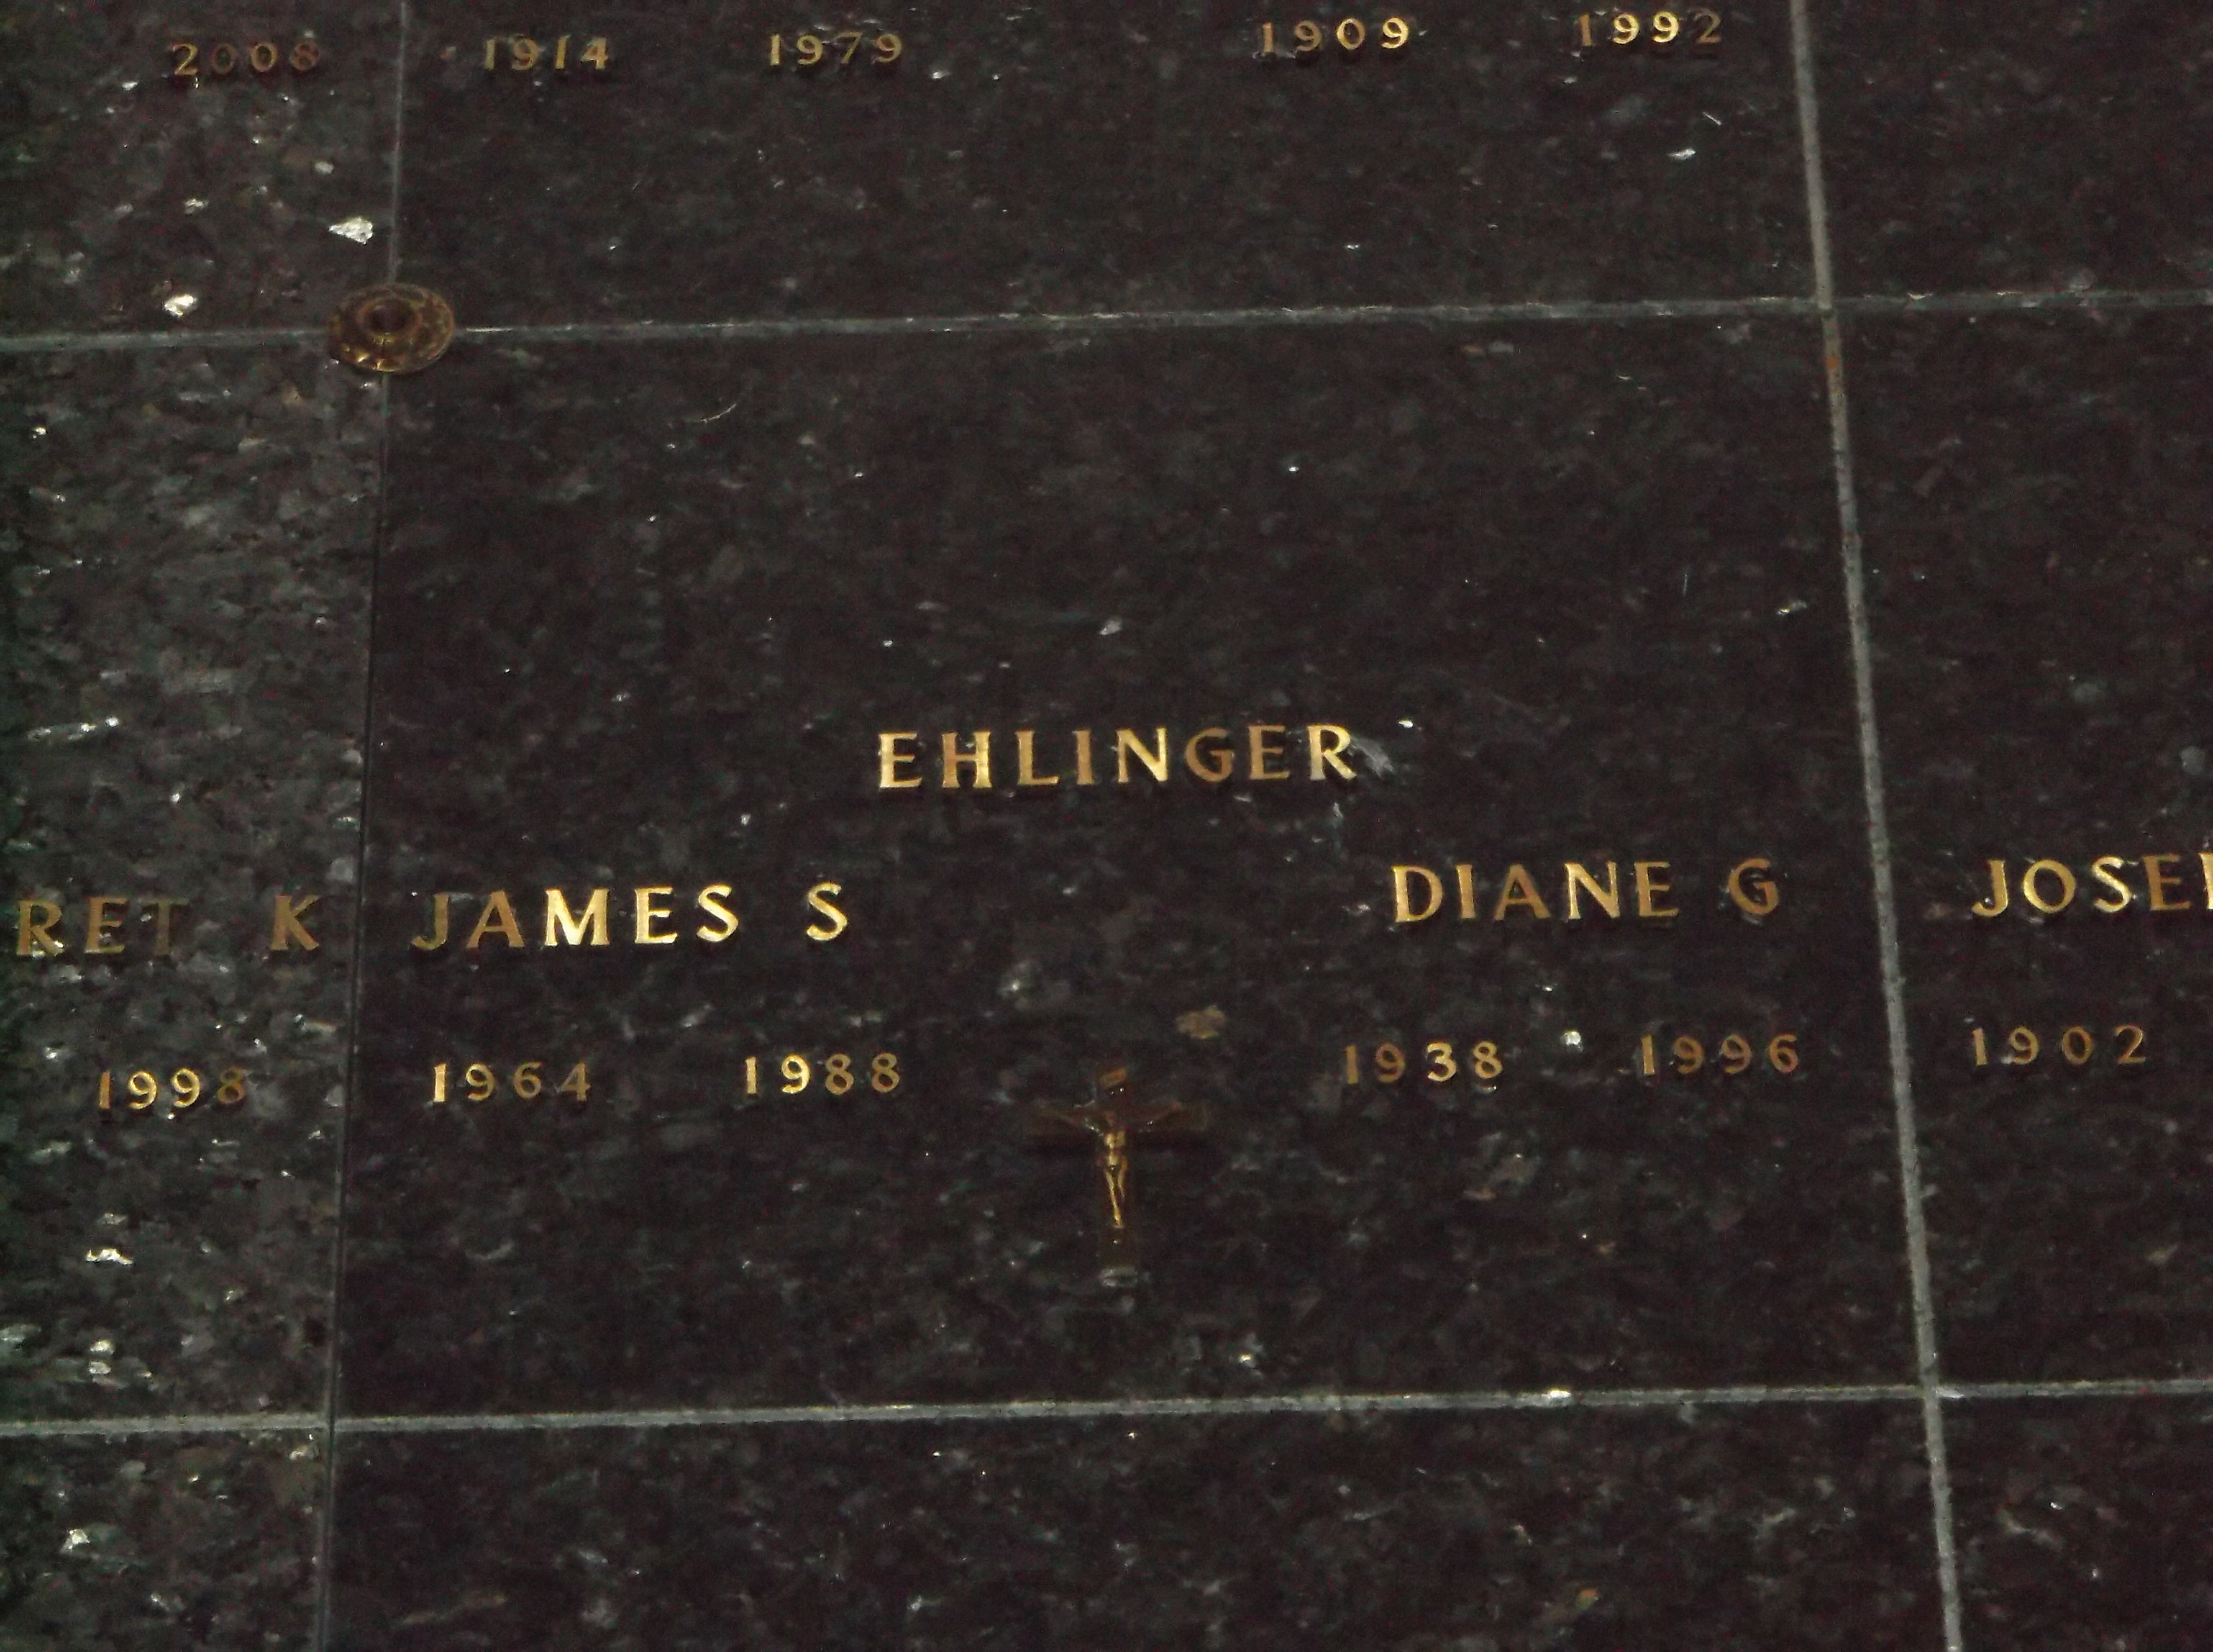 James S Ehlinger